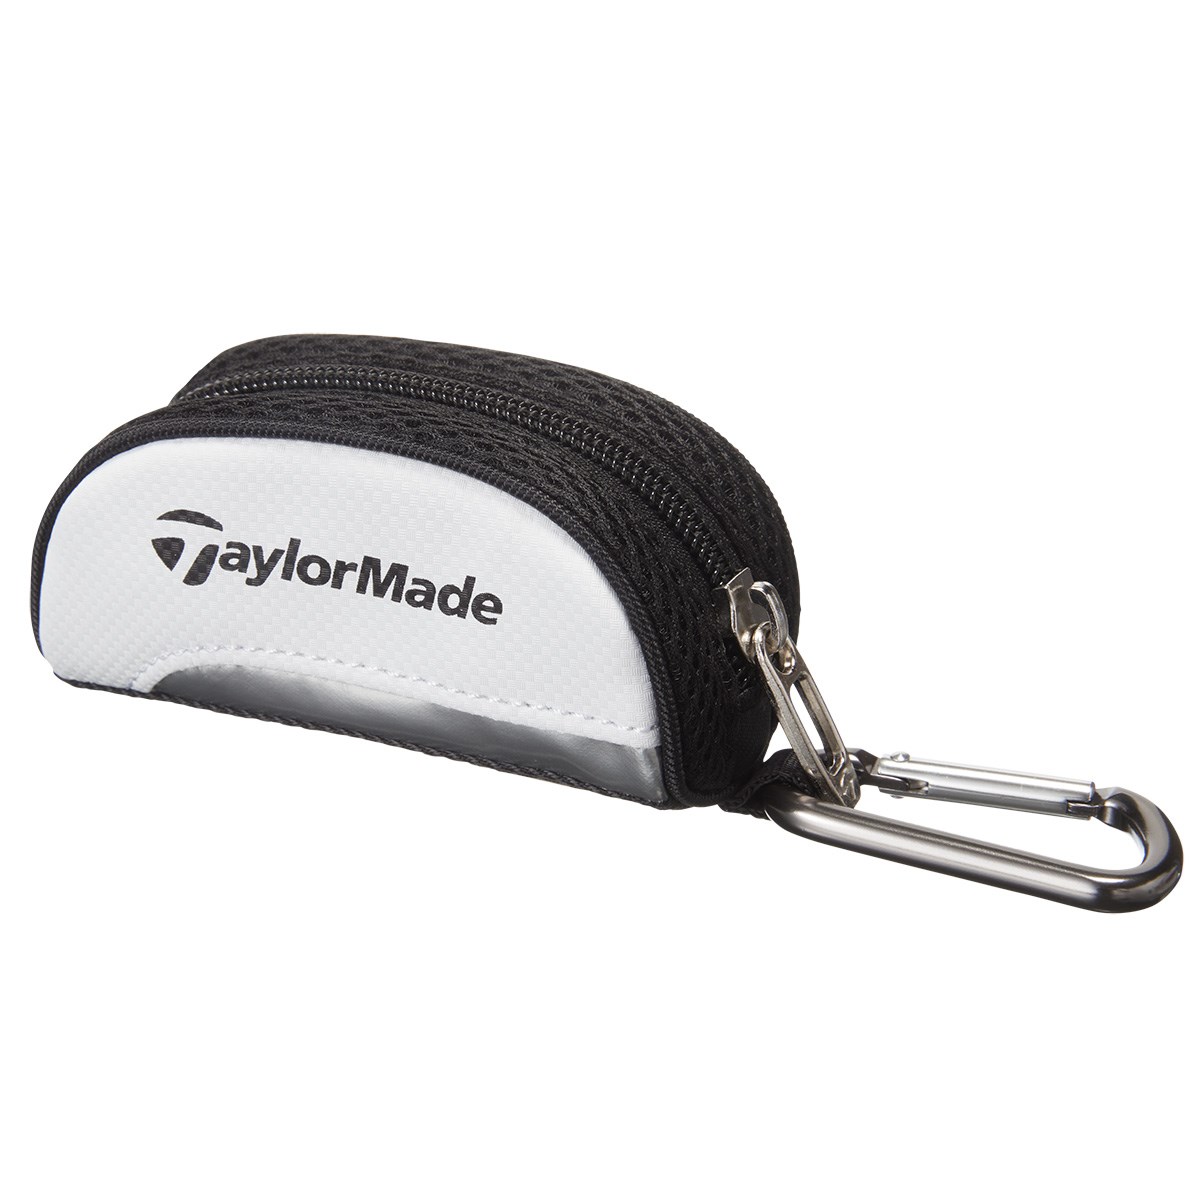 Dショッピング テーラーメイド Taylor Made トゥルーライト ボールケース ホワイト ブラック カテゴリ ゴルフボールケースの販売できる商品 Gdoゴルフショップ ドコモの通販サイト